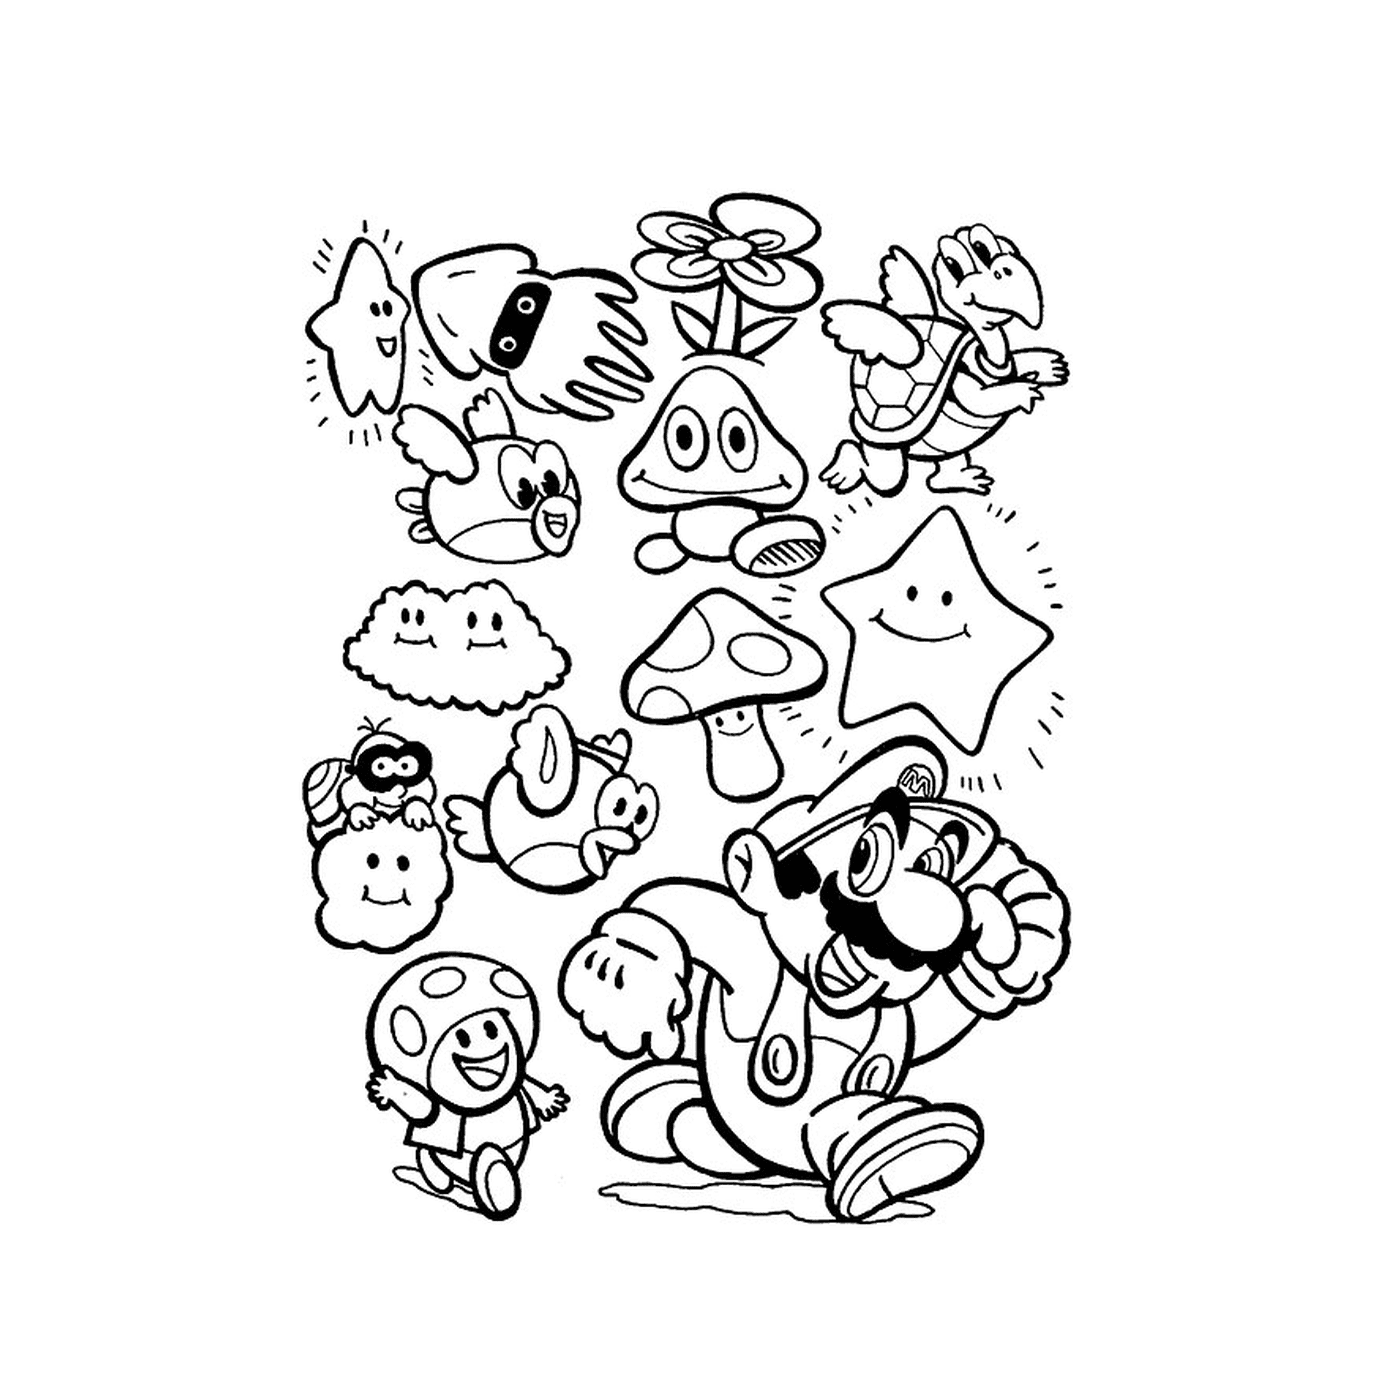  Un gruppo di personaggi dei cartoni animati disegnati insieme 